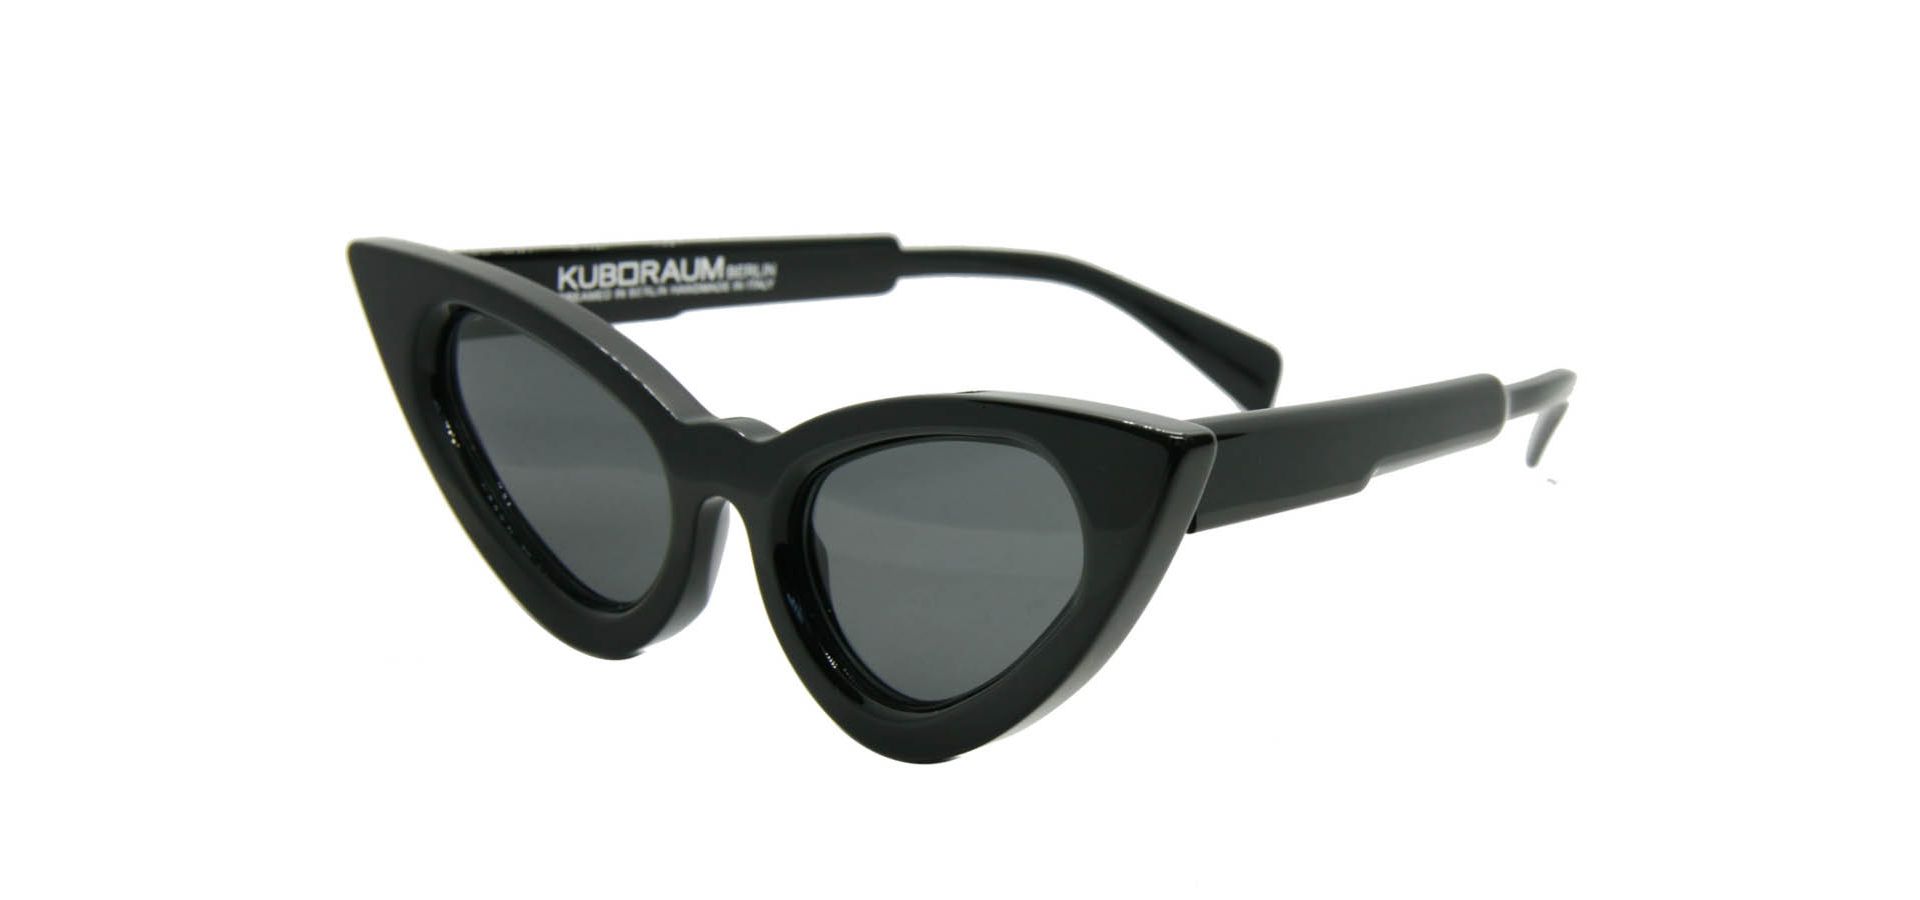 Sončna očala Kuboraum Y3 5321 BS GREY: Velikost: 53/21, Spol: ženska, Material: acetat